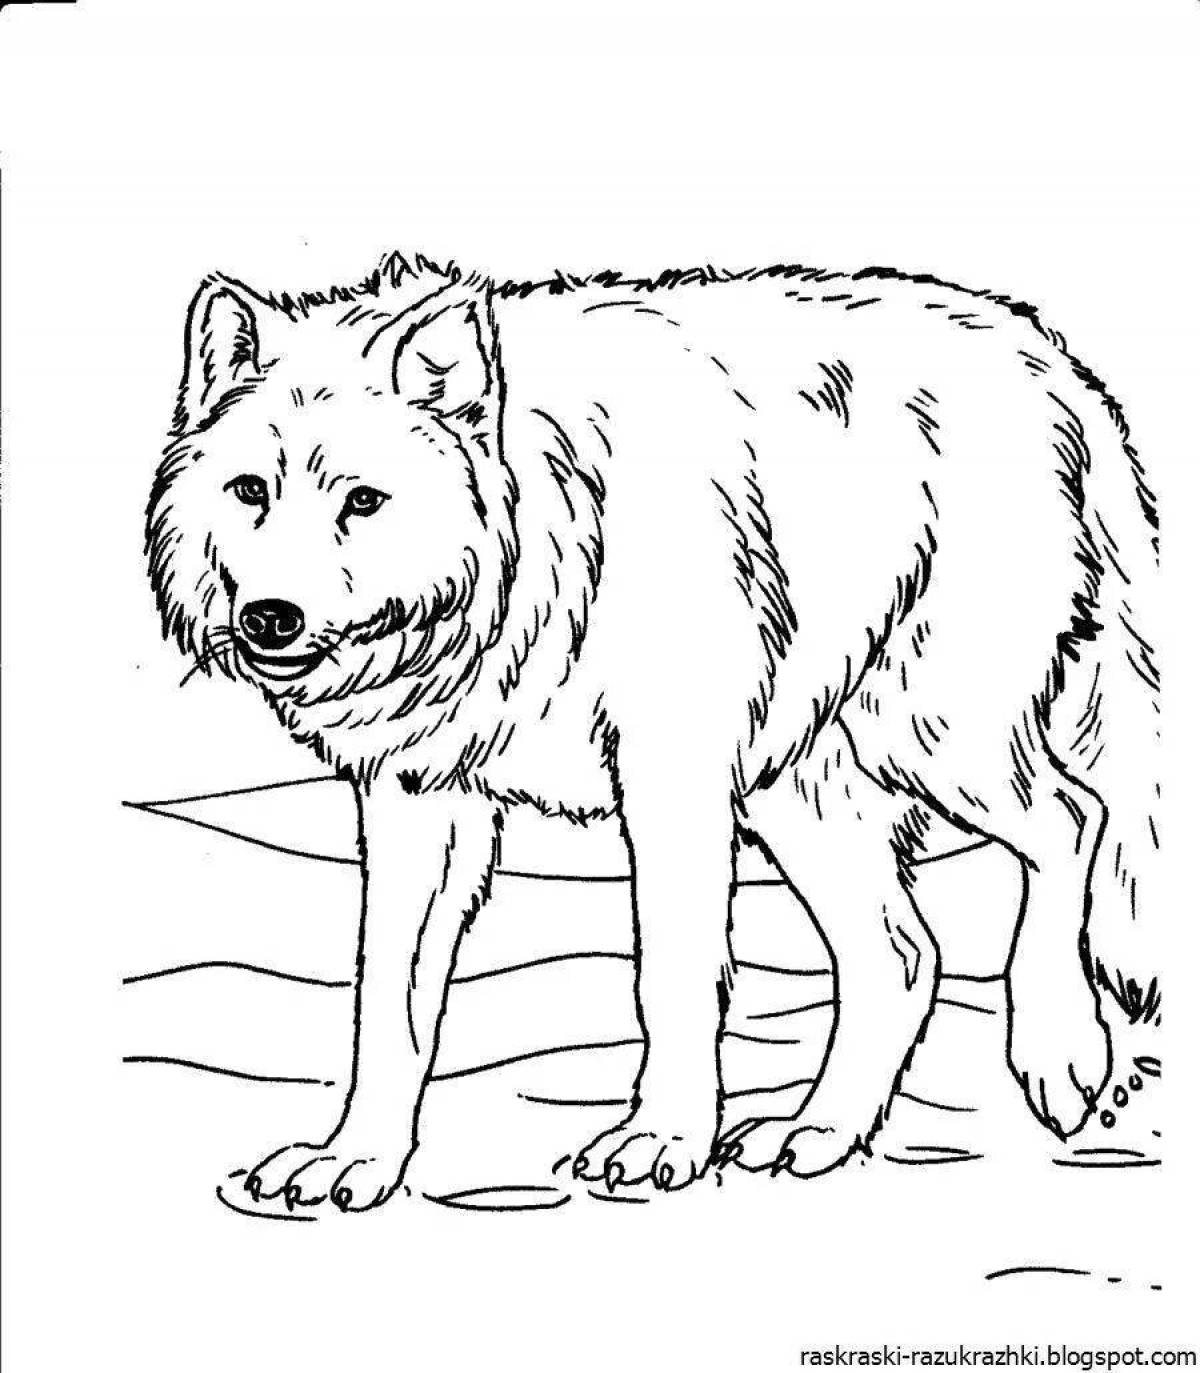 Распечатать раскраску дикие животные. Раскраска волк. Волк раскраска для детей. Раскраска "Дикие животные". Дикие животные раскраска для детей.